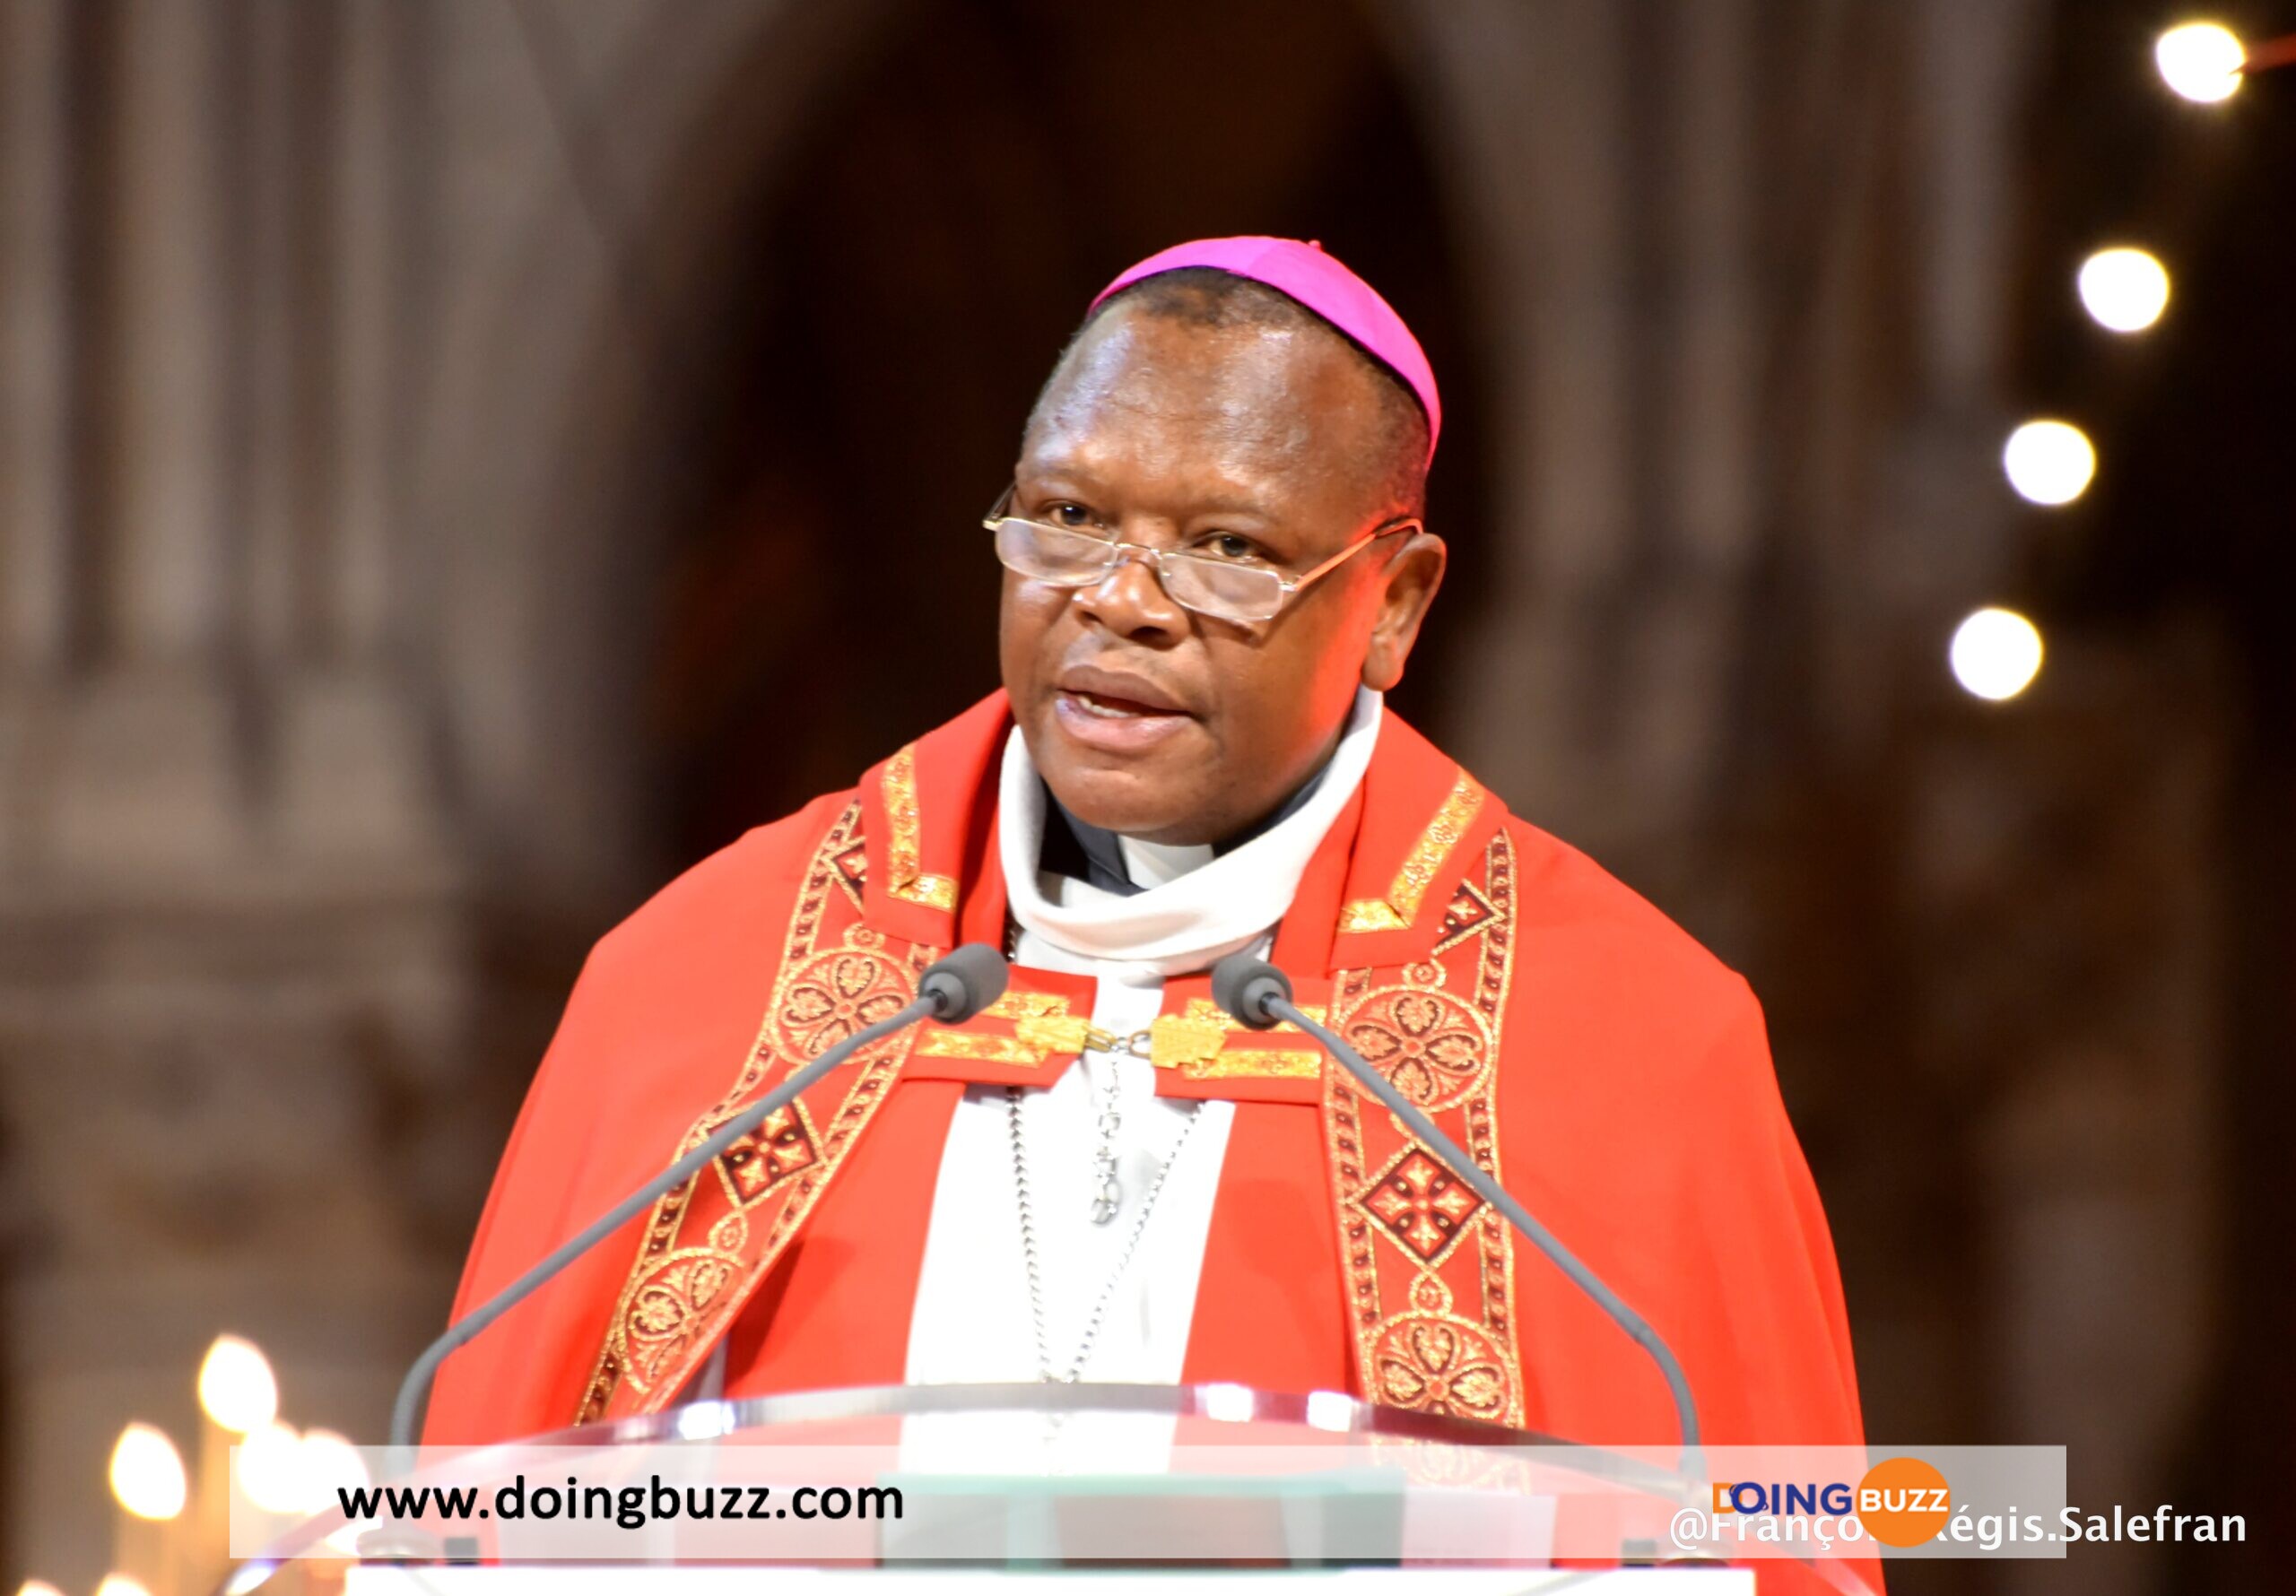 Le Cardinal Fridolin Ambongo Fait Face À Des Poursuites Judiciaires En Rdc